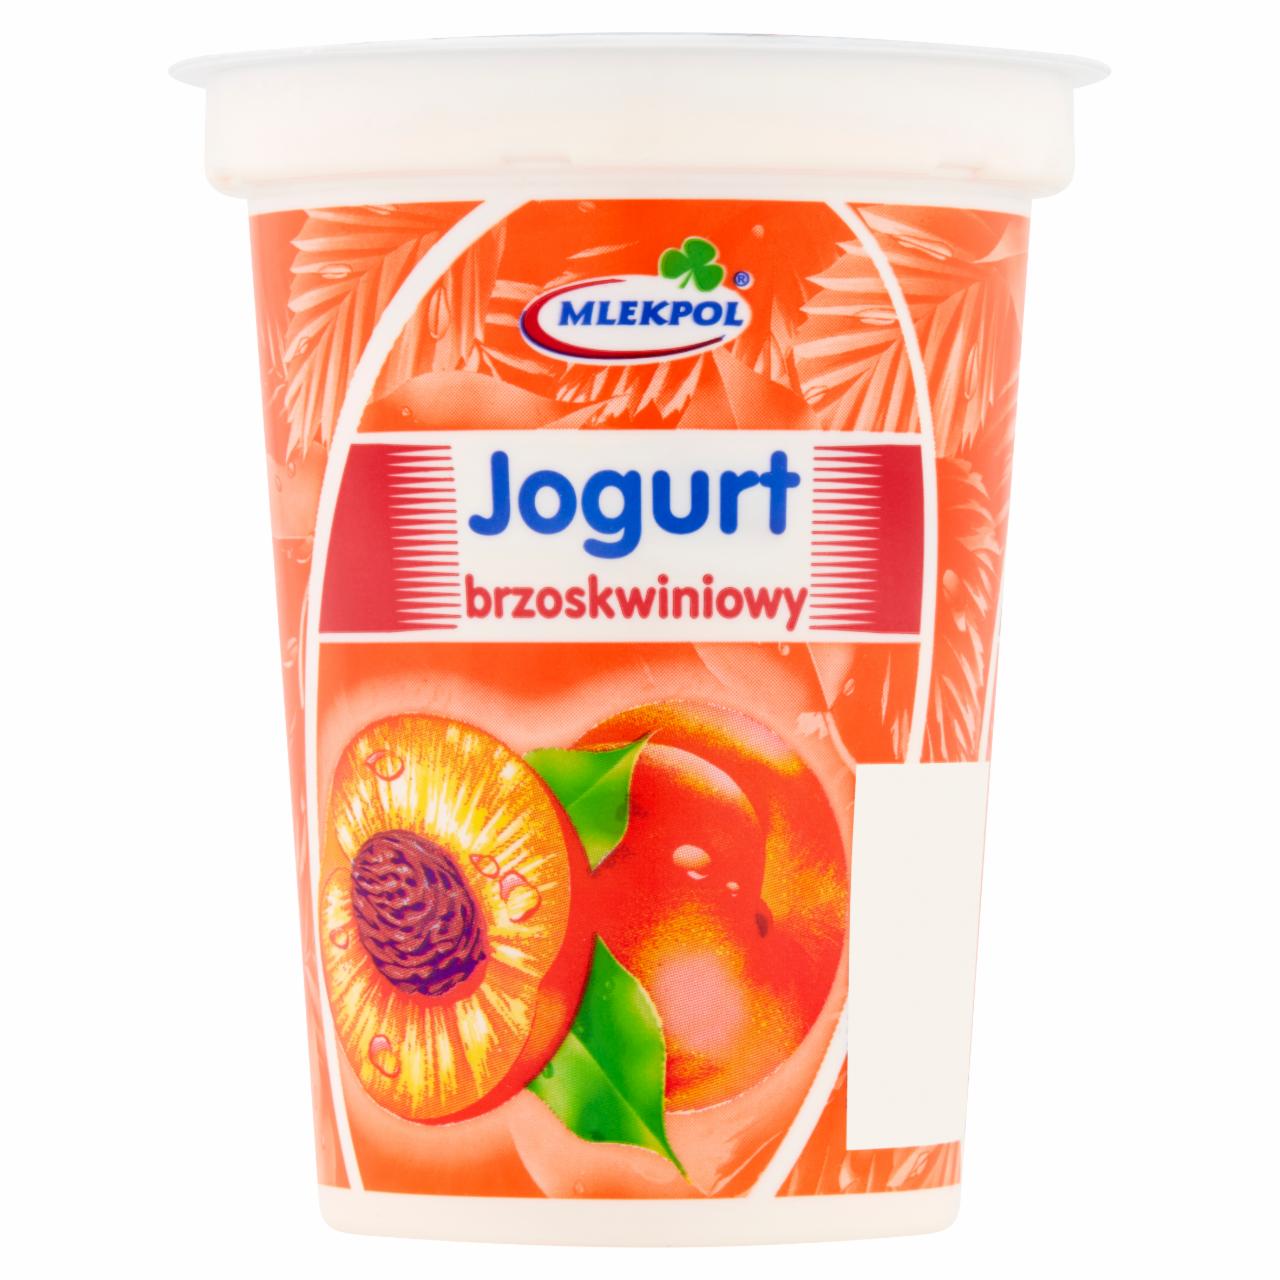 Zdjęcia - Mlekpol Jogurt brzoskwiniowy 400 g